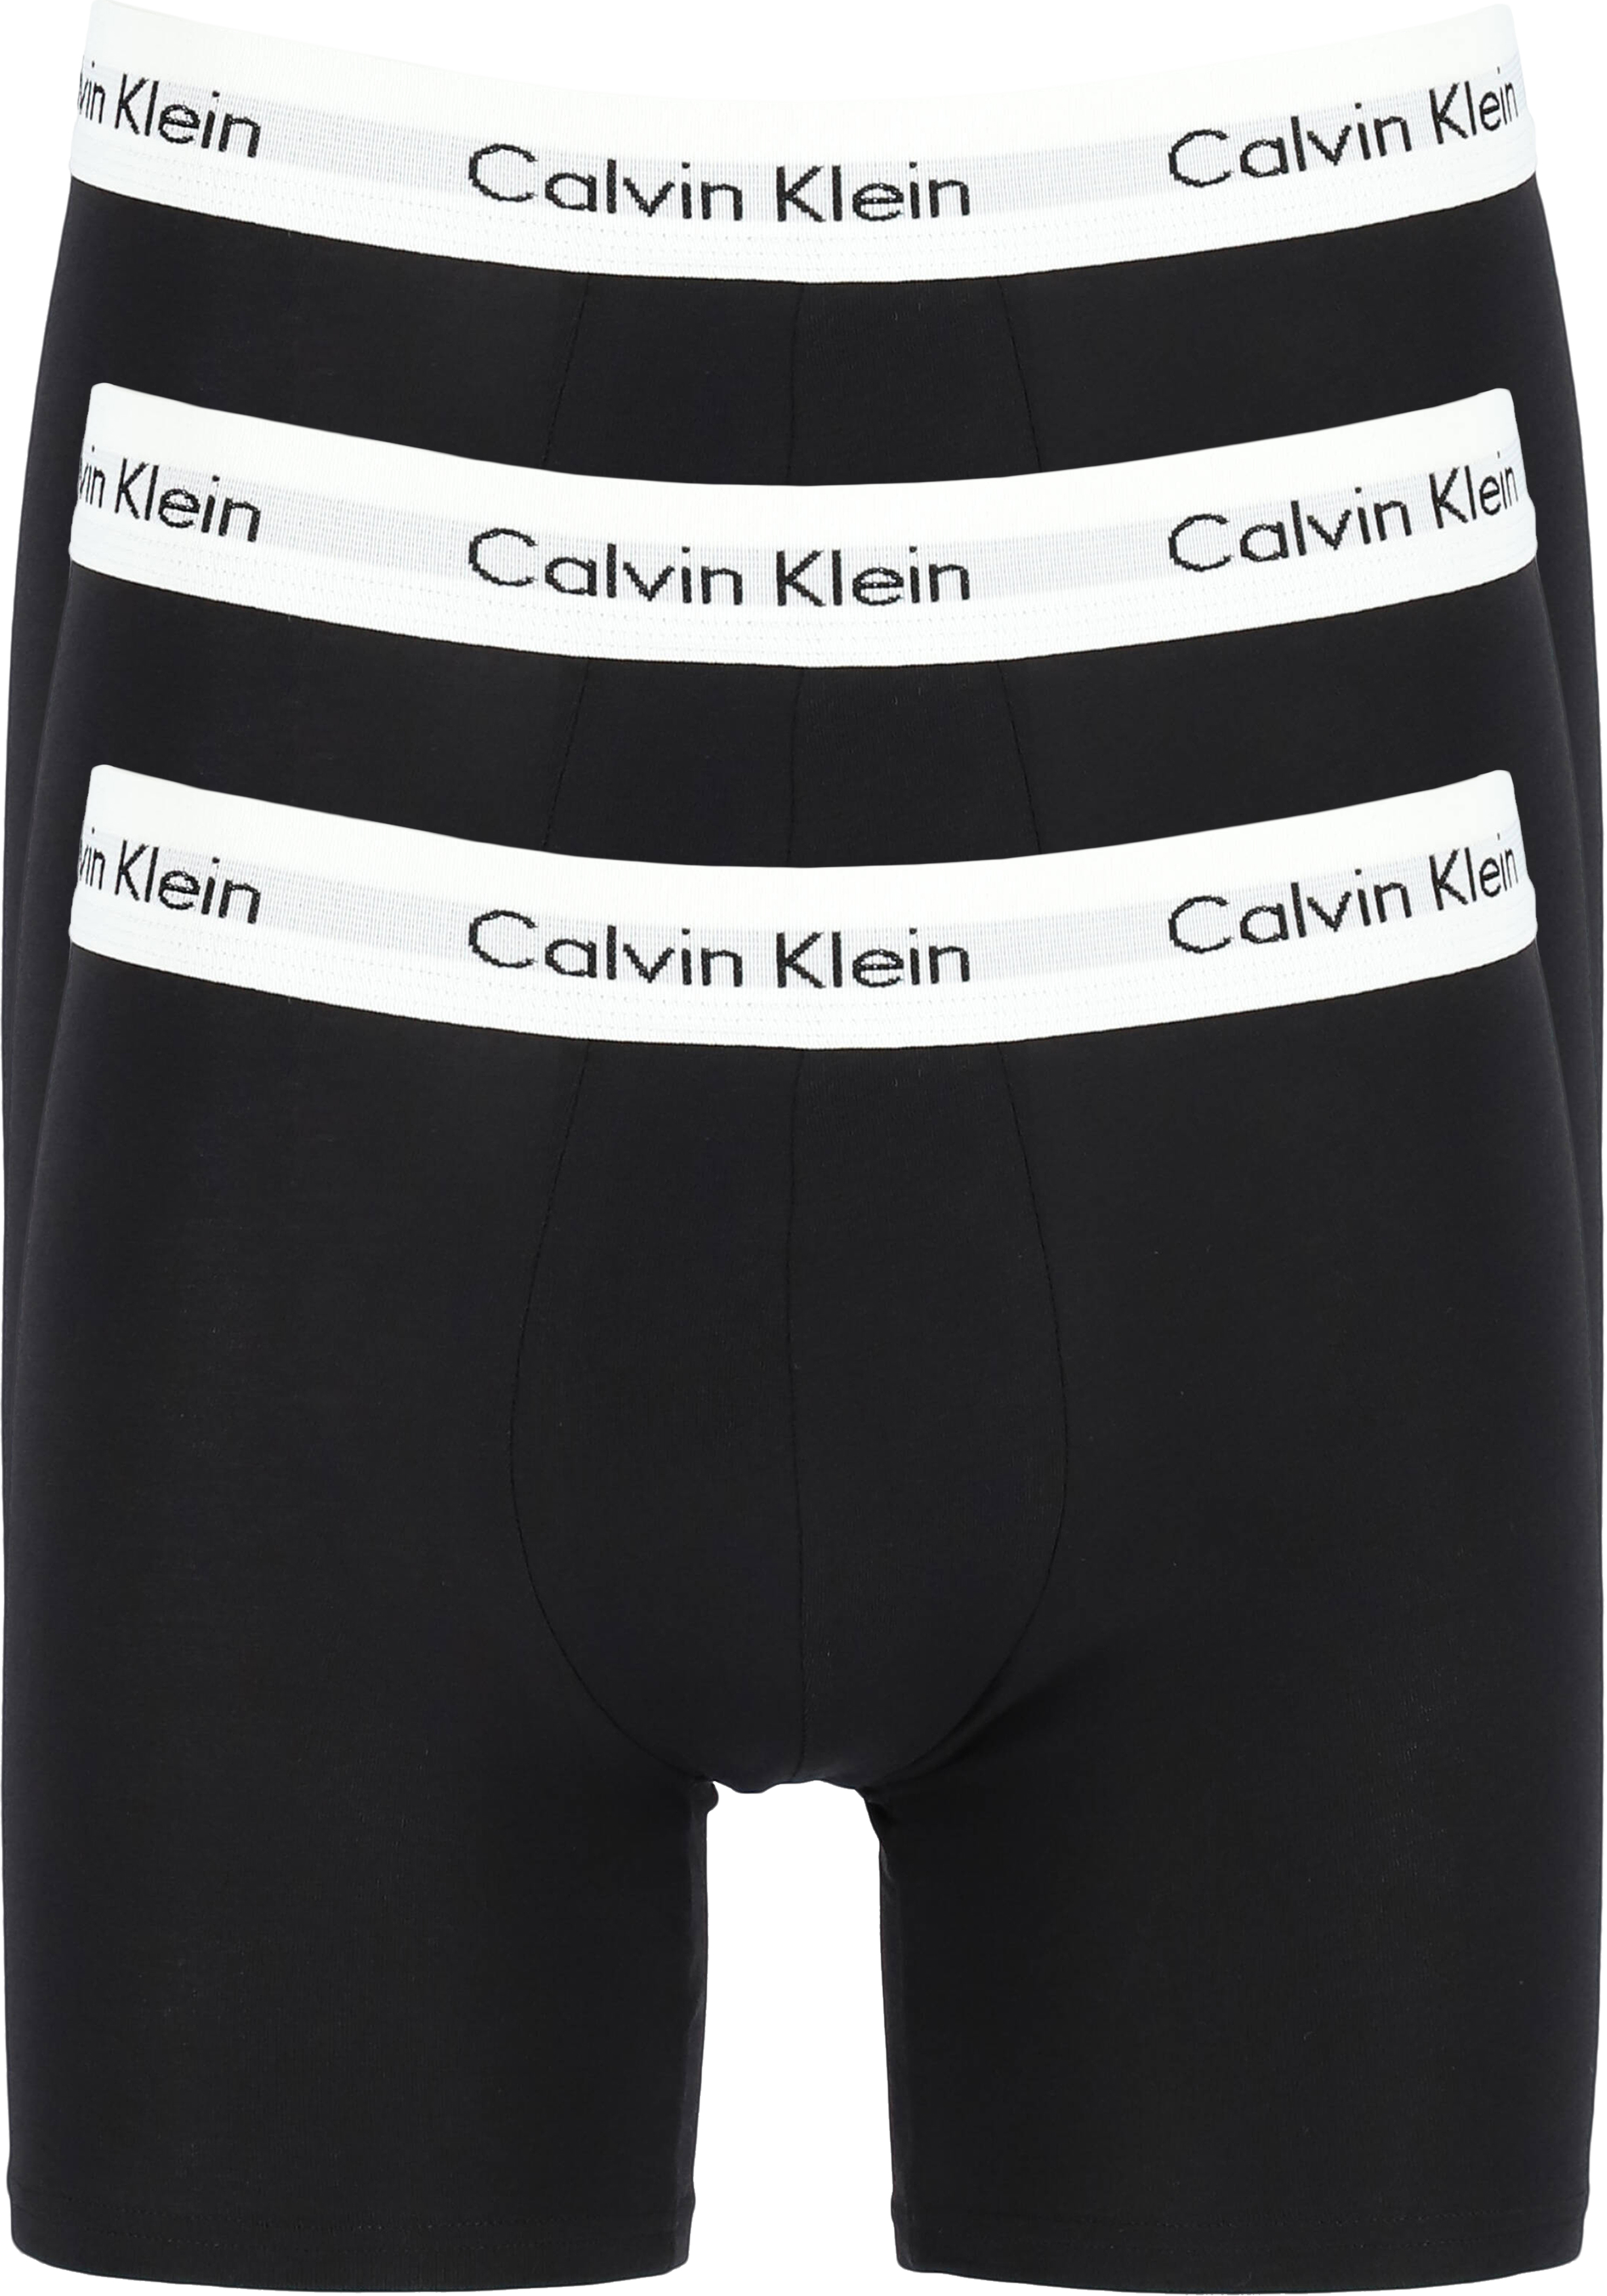 Oom of meneer In beweging Ontoegankelijk Calvin Klein Cotton Stretch boxer brief (3-pack), heren boxers extra... -  Zomer SALE tot 50% korting